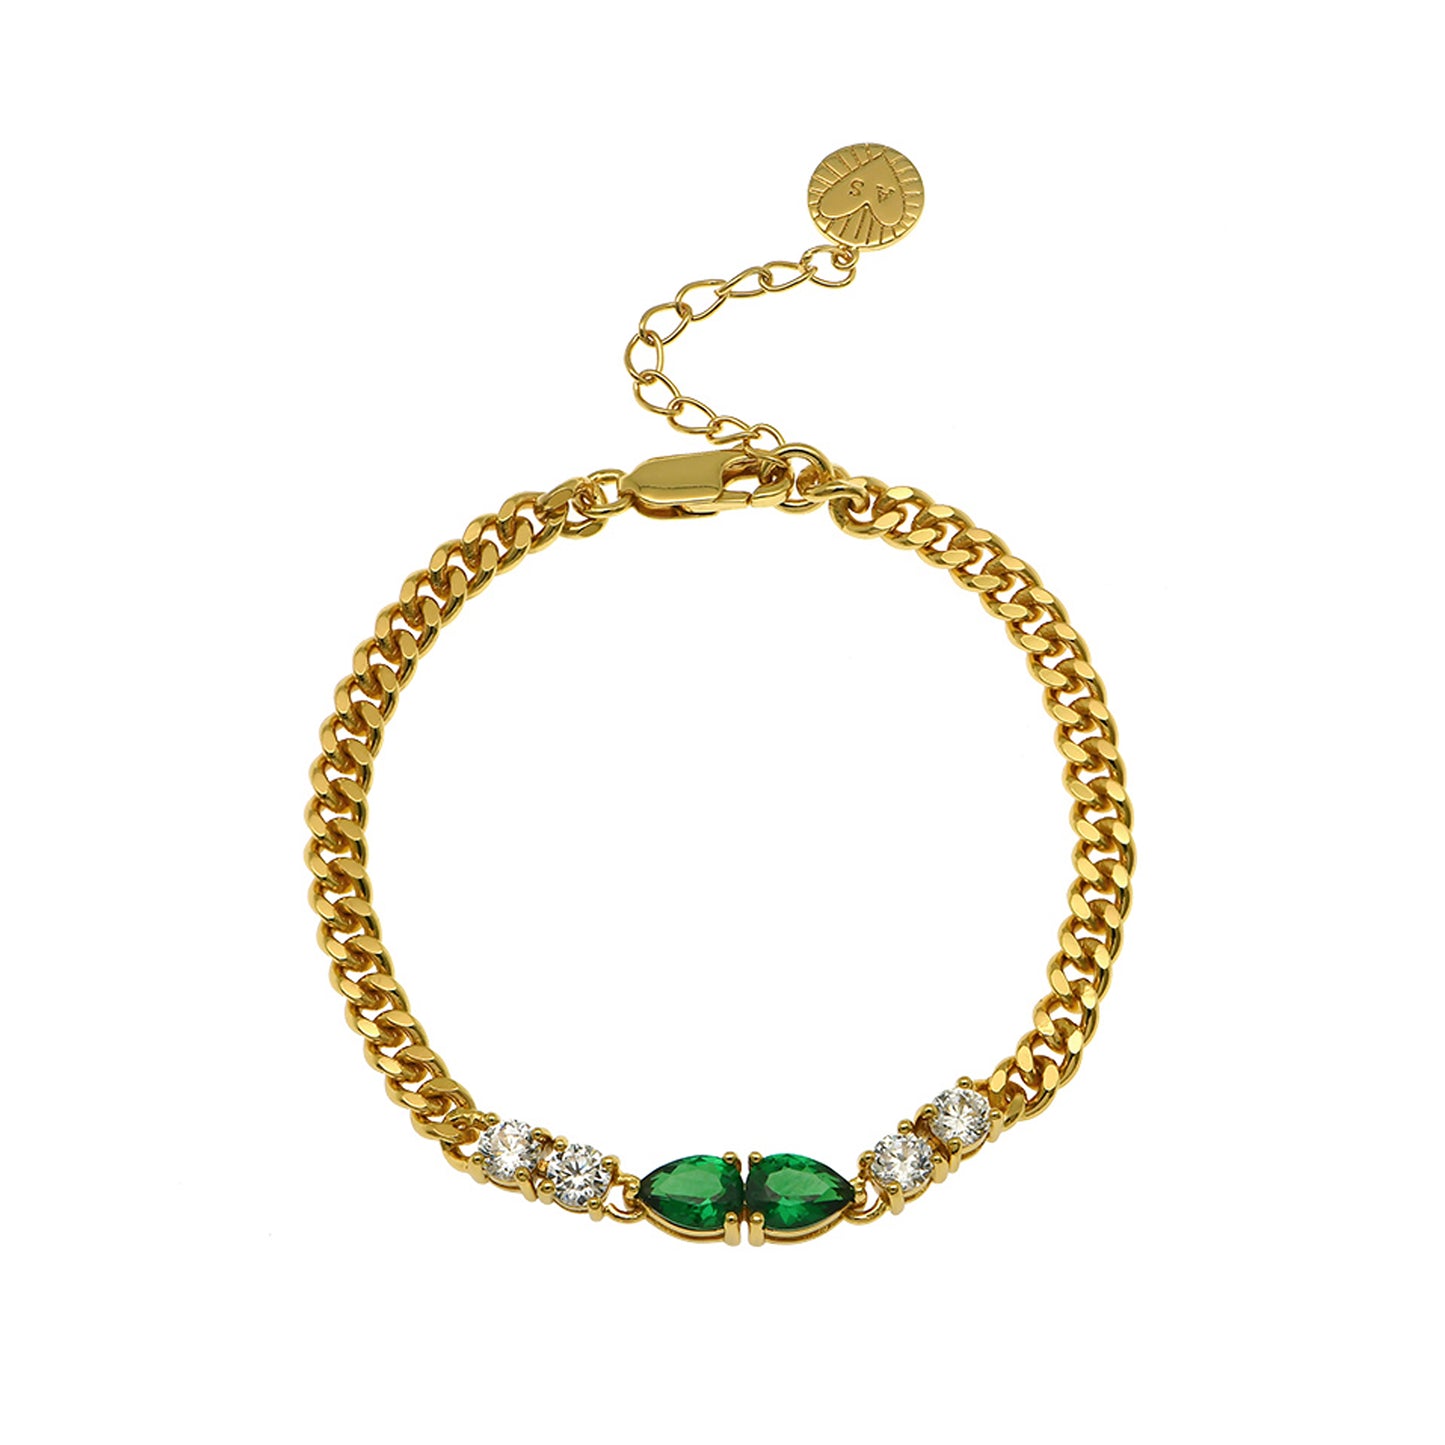 Emerald Green & Gold Bracelet Stacking Set